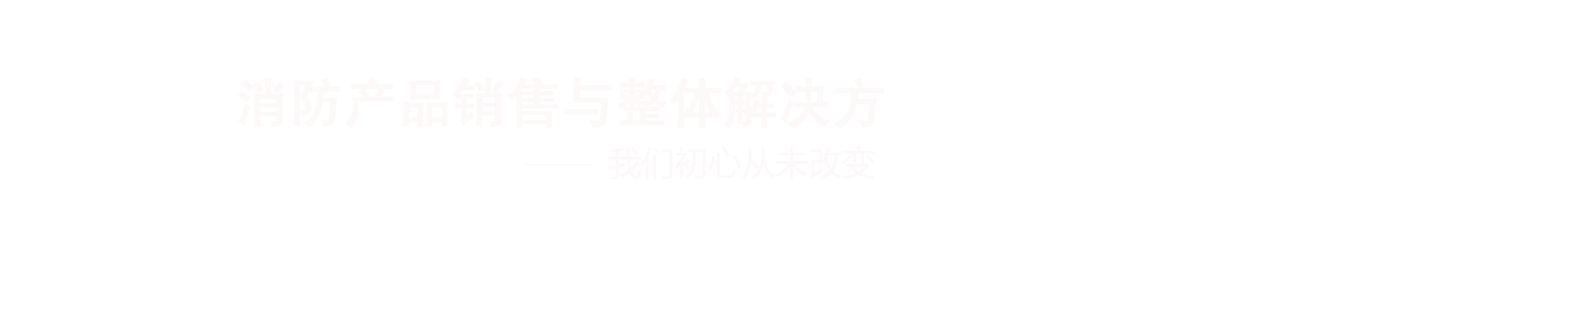 凯时K66·(中国区)官方网站_活动4374